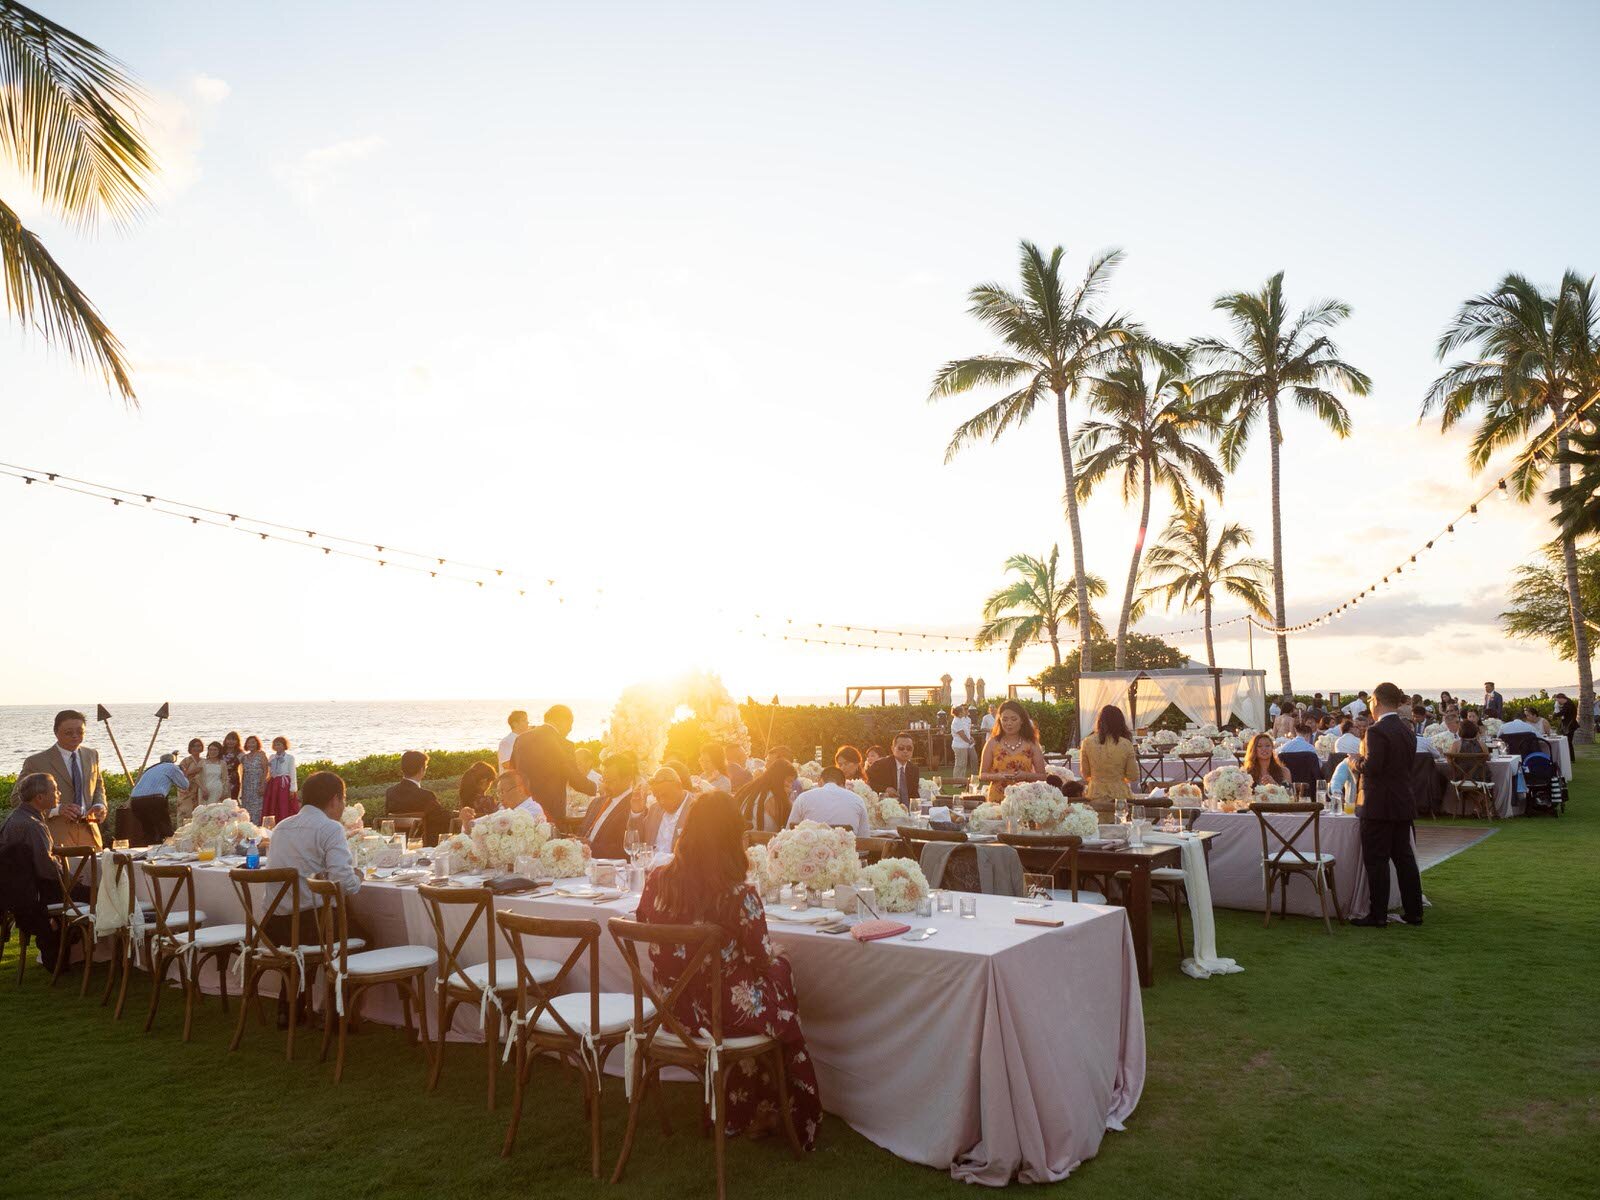 Four Seasons Oahu Ocean Lawn Wedding Venue on Oahu Hawaii-2.jpg